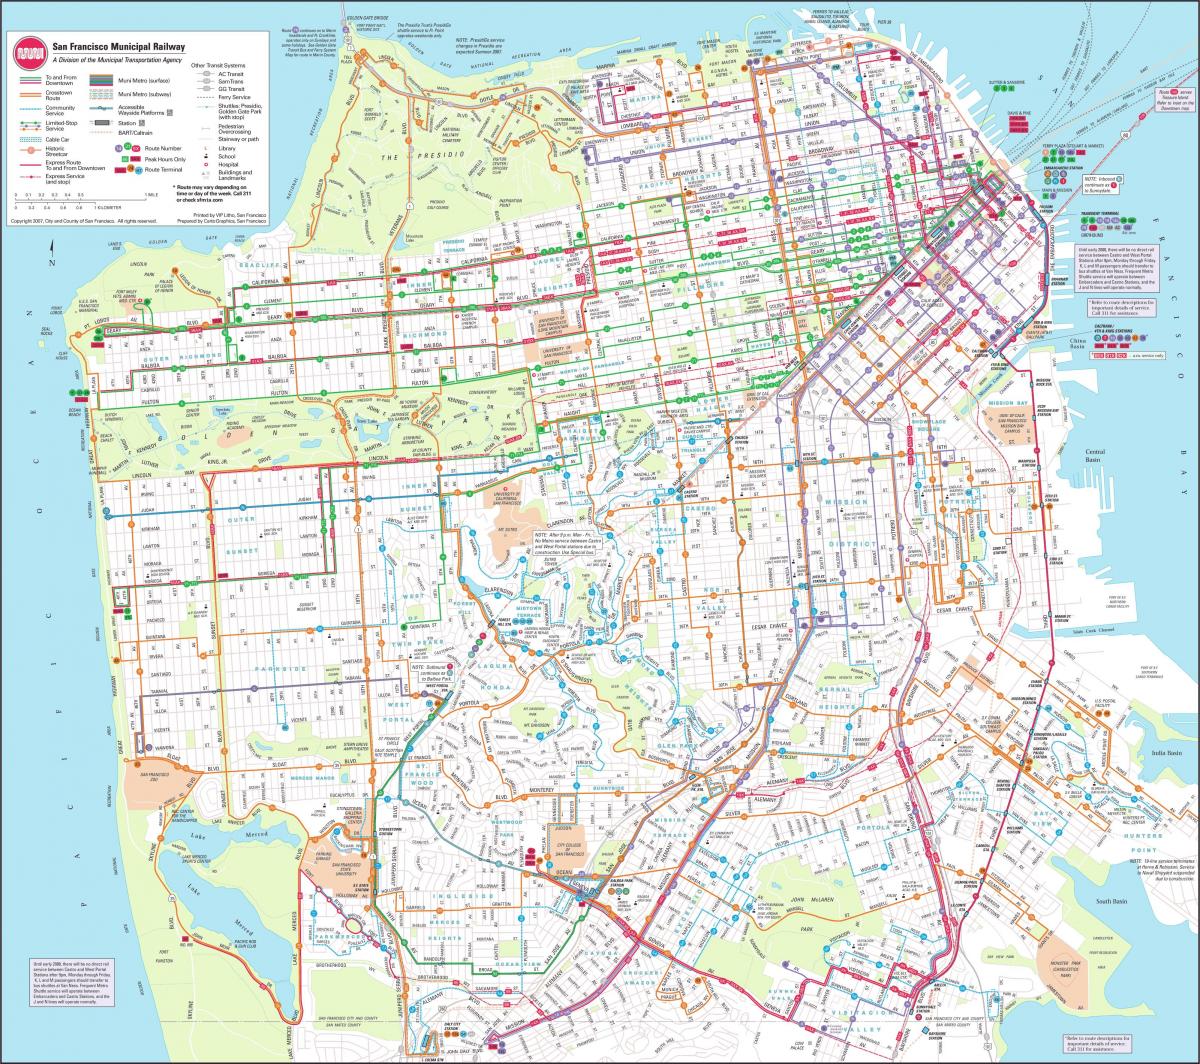 Karta za San Francisco ogradu